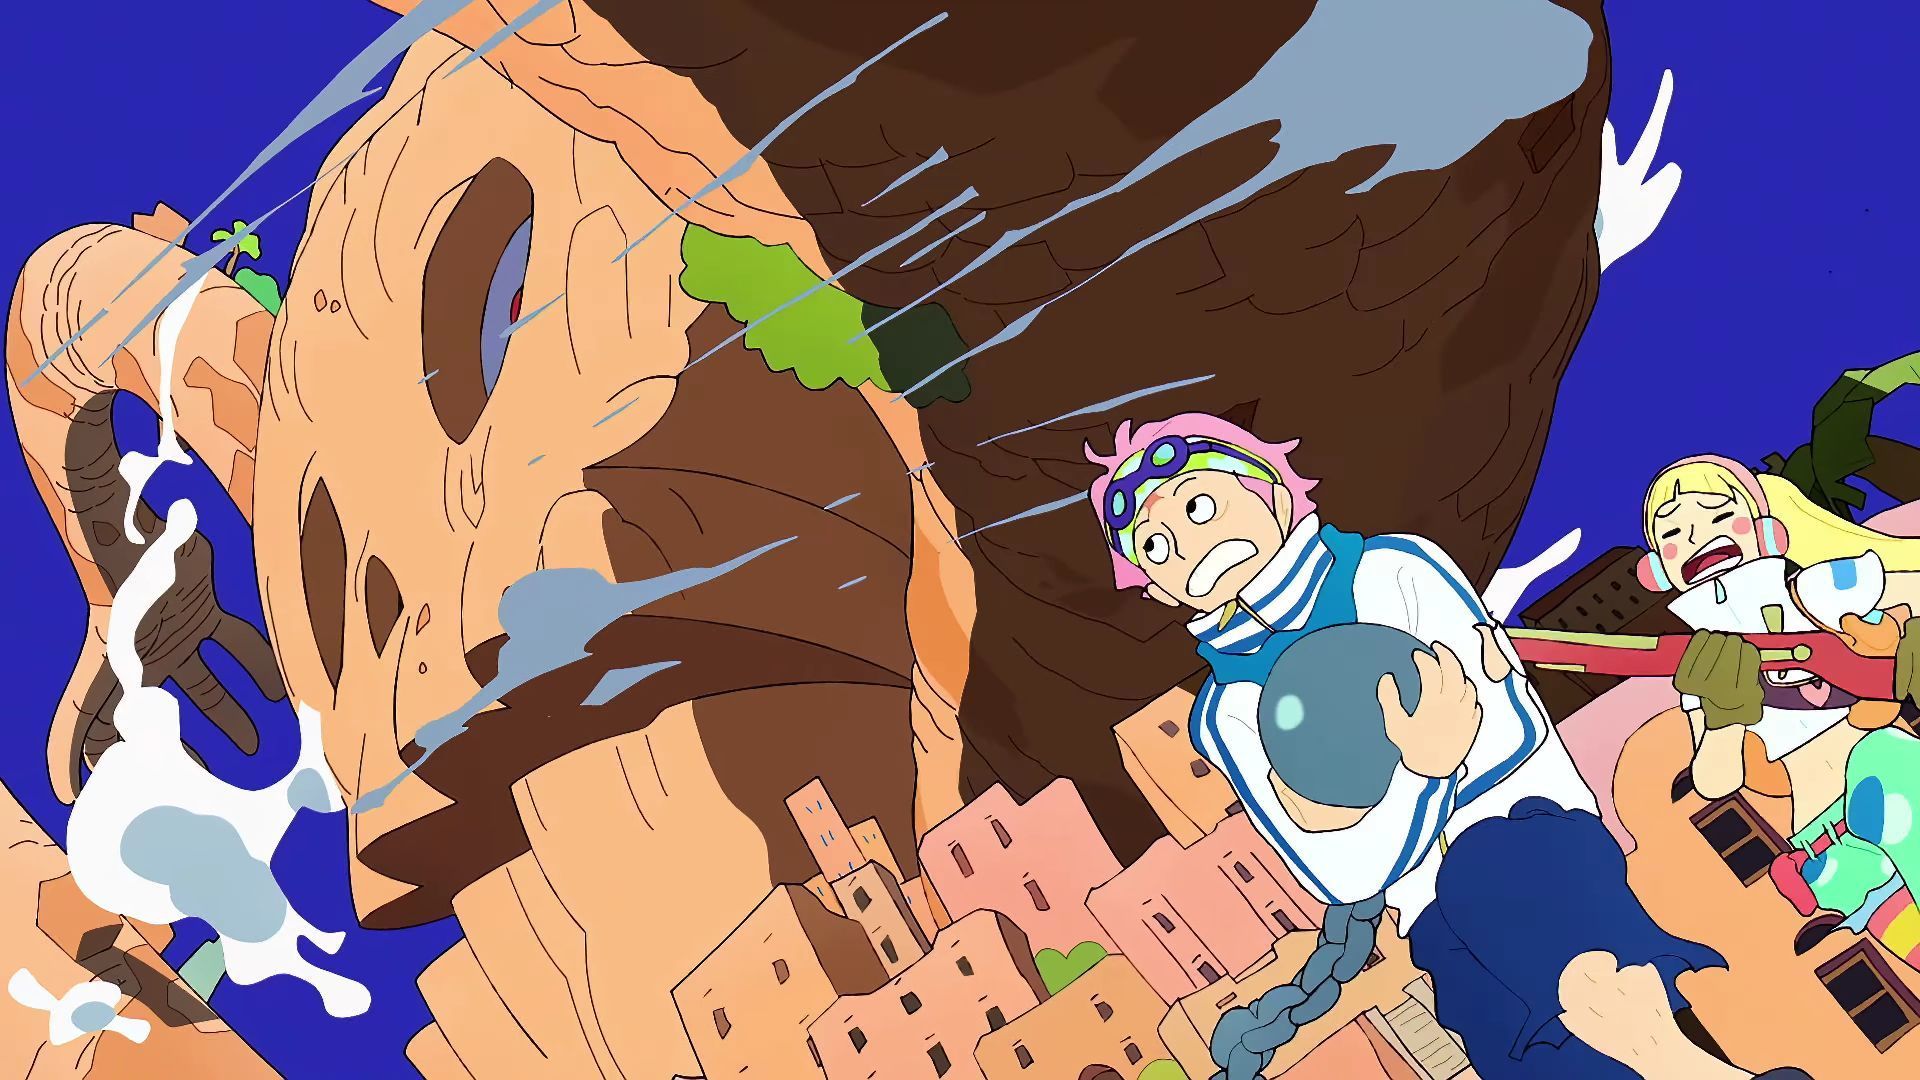 Pizarro targeting Koby and Hibari (Image via Toei Animation, One Piece)